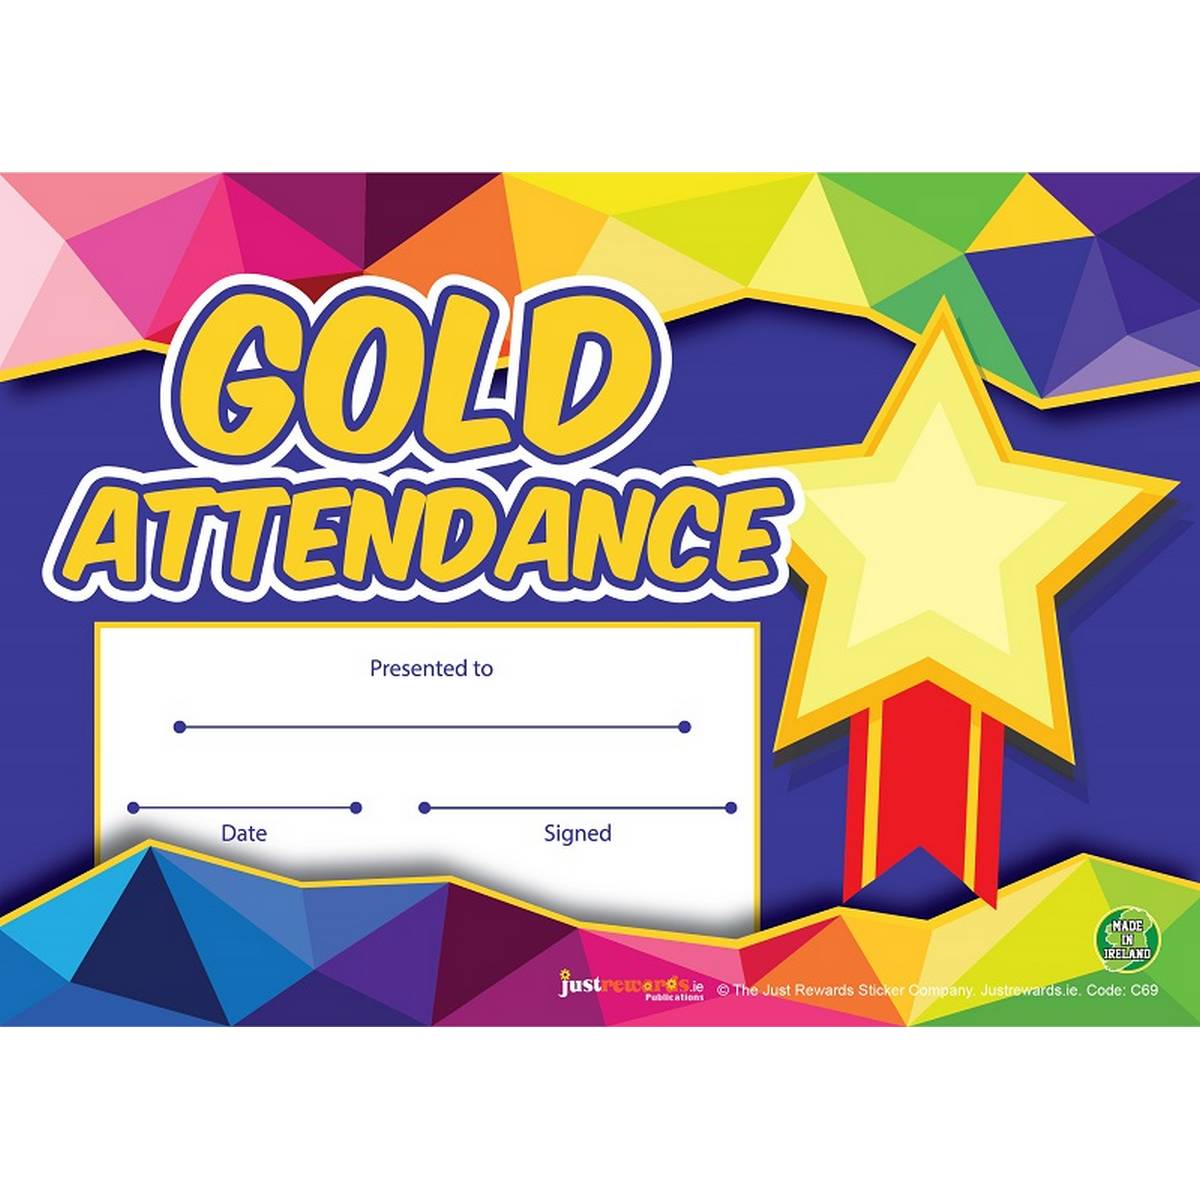 Gold Attendance Award Certificates